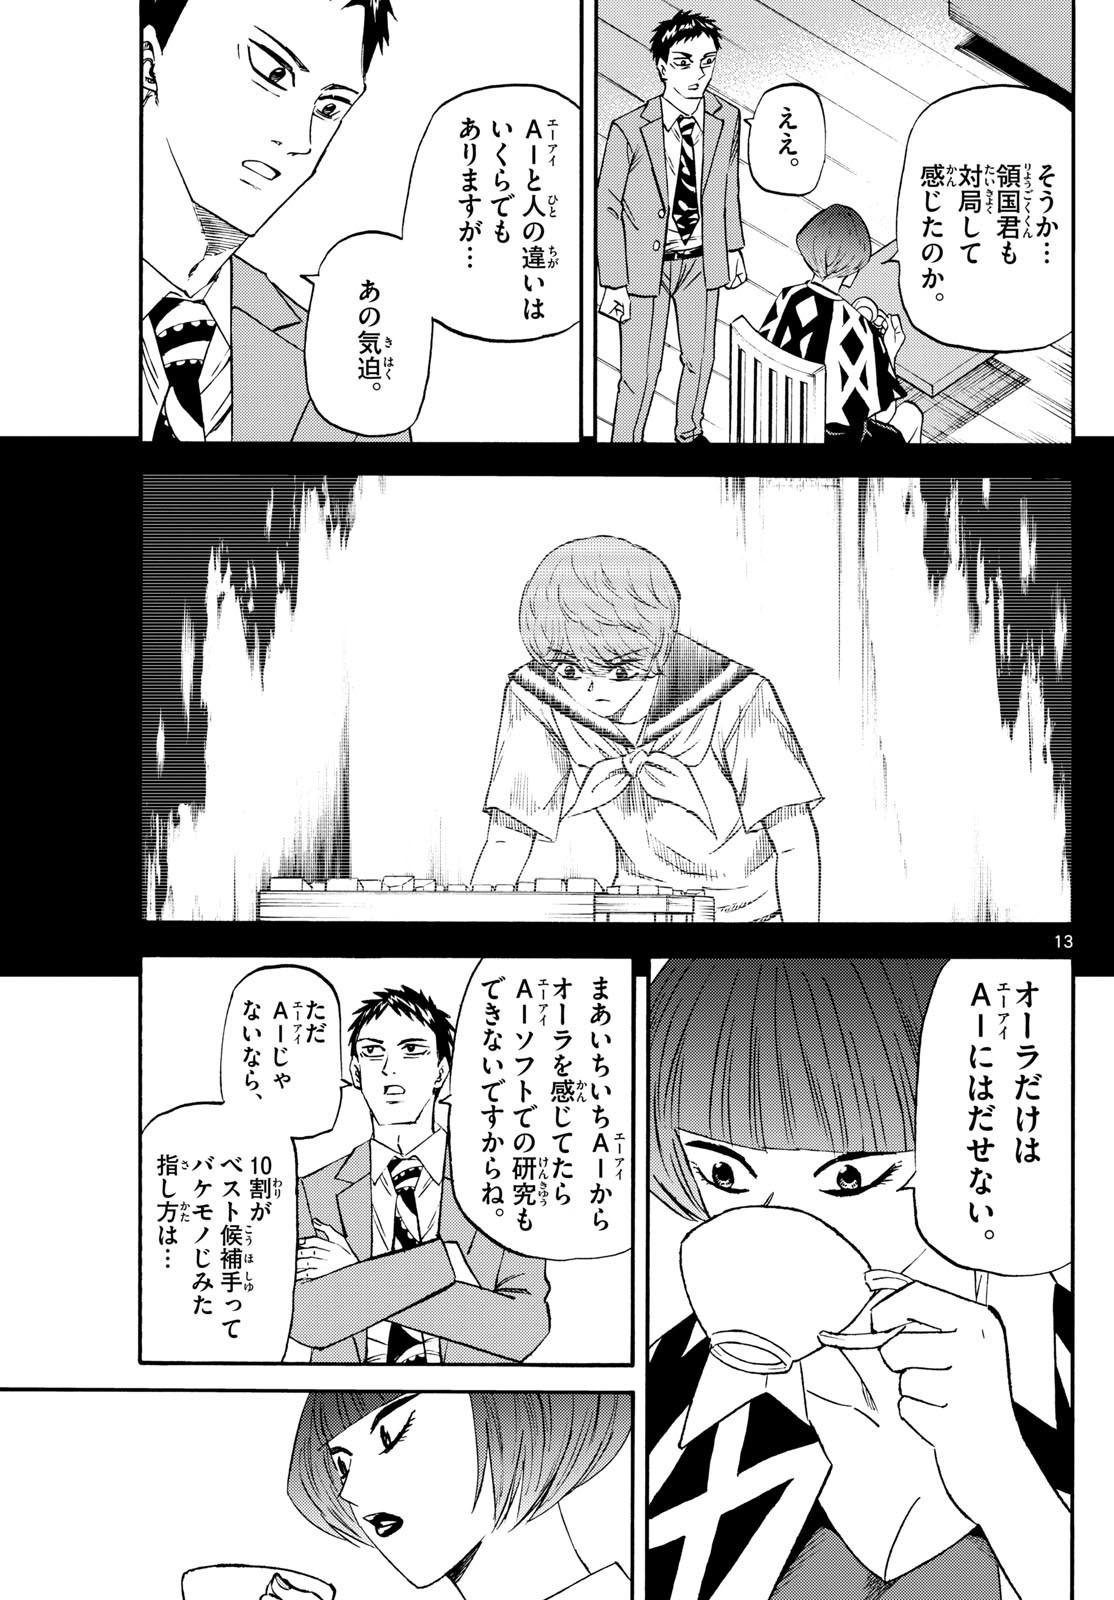 Ryu-to-Ichigo - Chapter 201 - Page 13